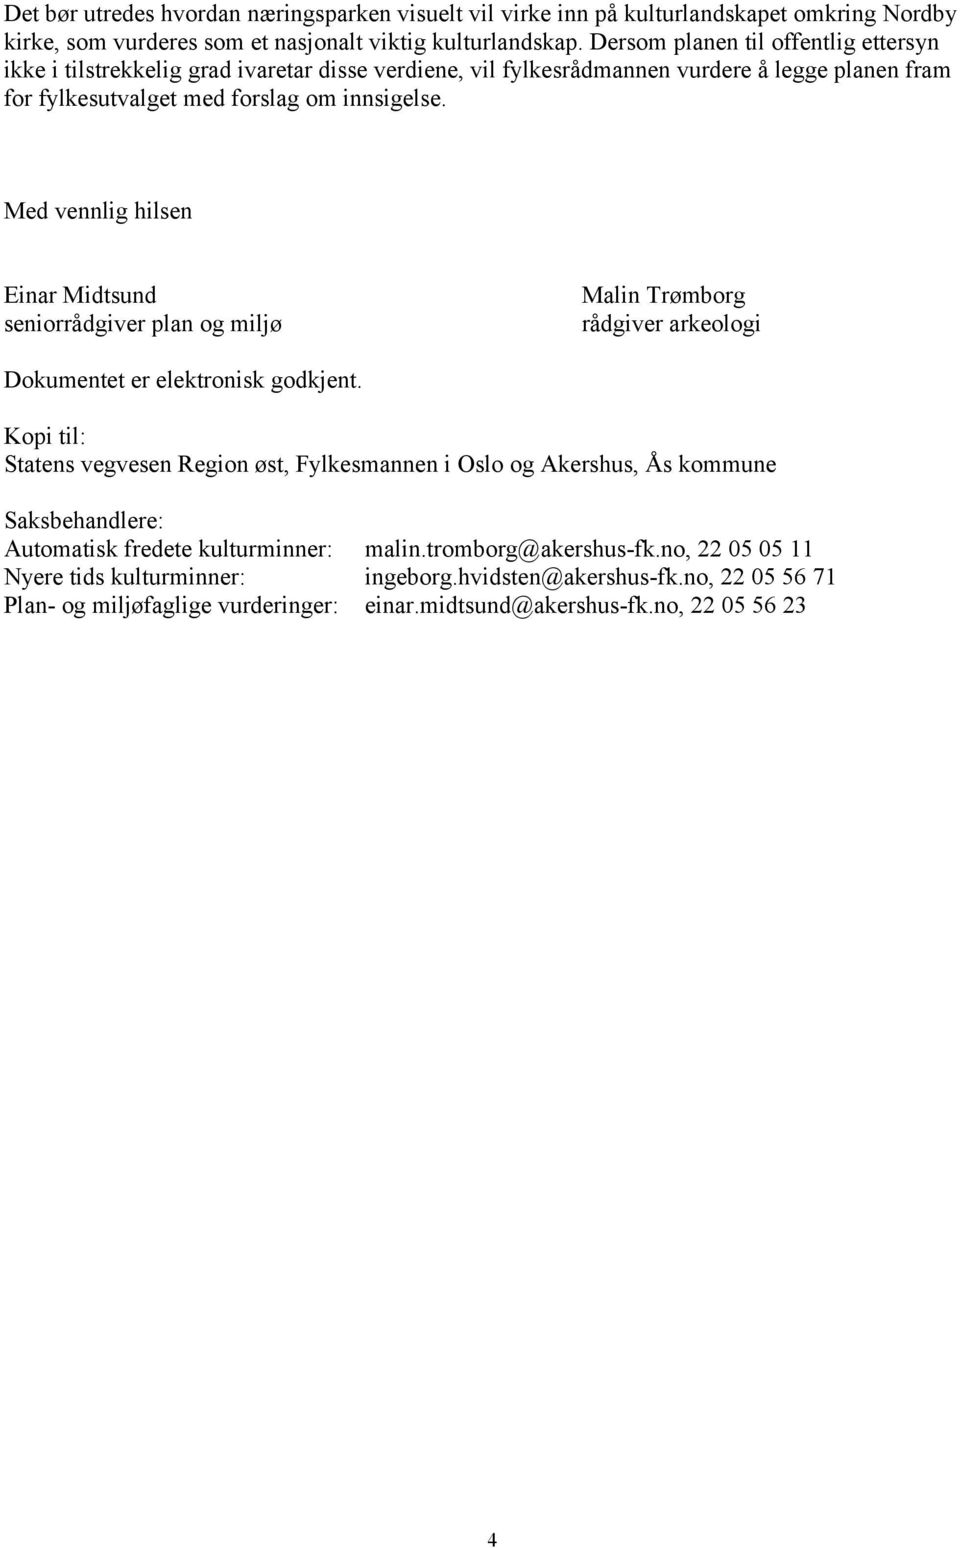 Med vennlig hilsen Einar Midtsund seniorrådgiver plan og miljø Malin Trømborg rådgiver arkeologi Dokumentet er elektronisk godkjent.